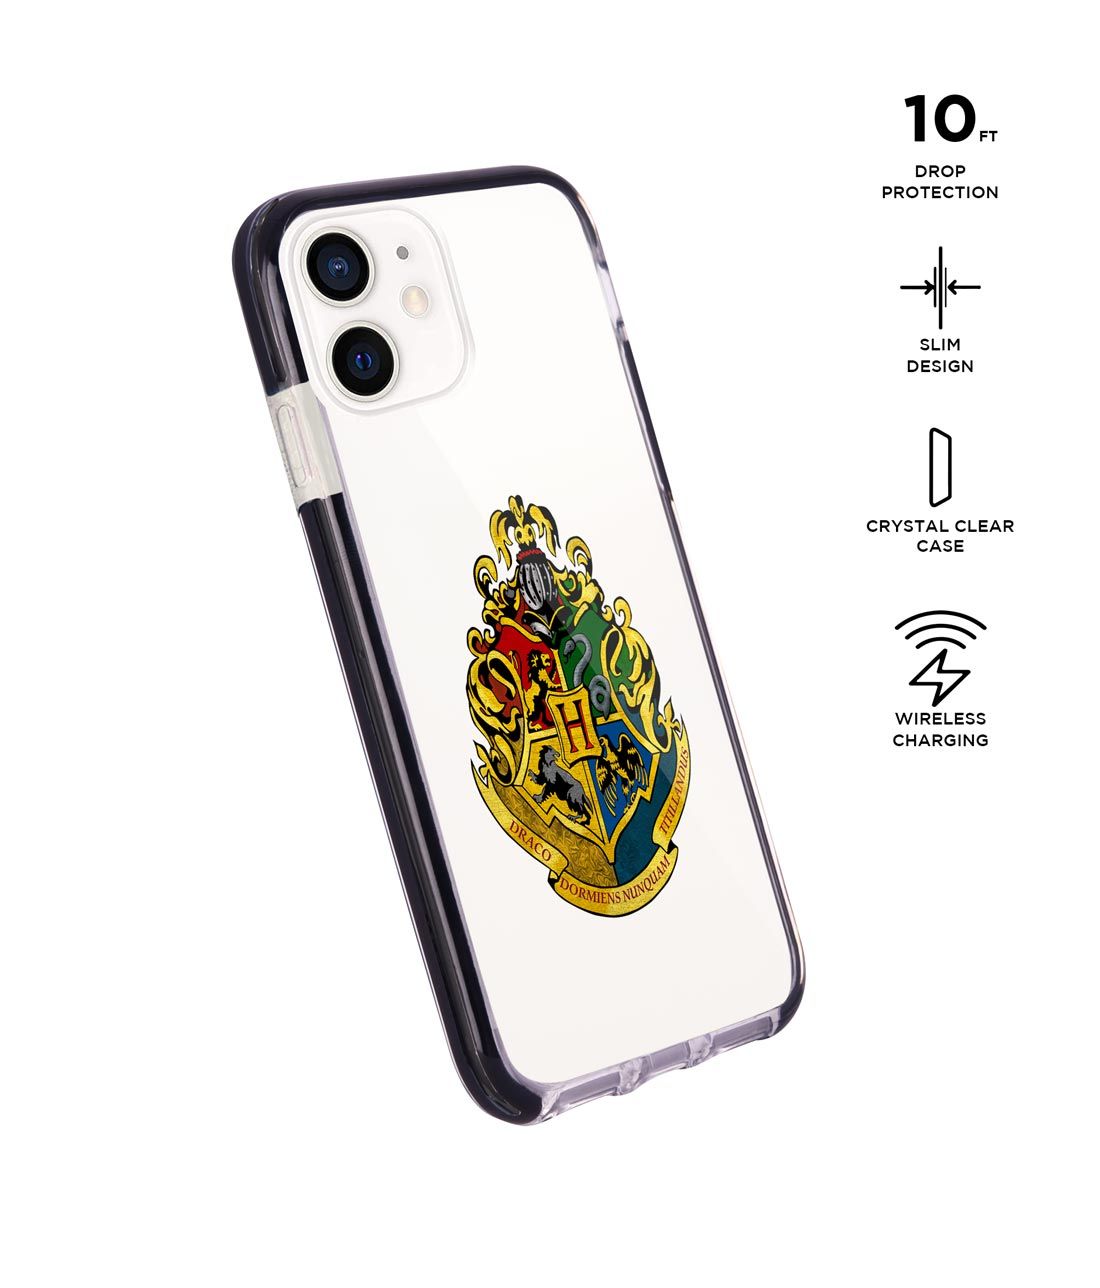 Hogwarts Sigil - Extreme Case for iPhone 12 Mini